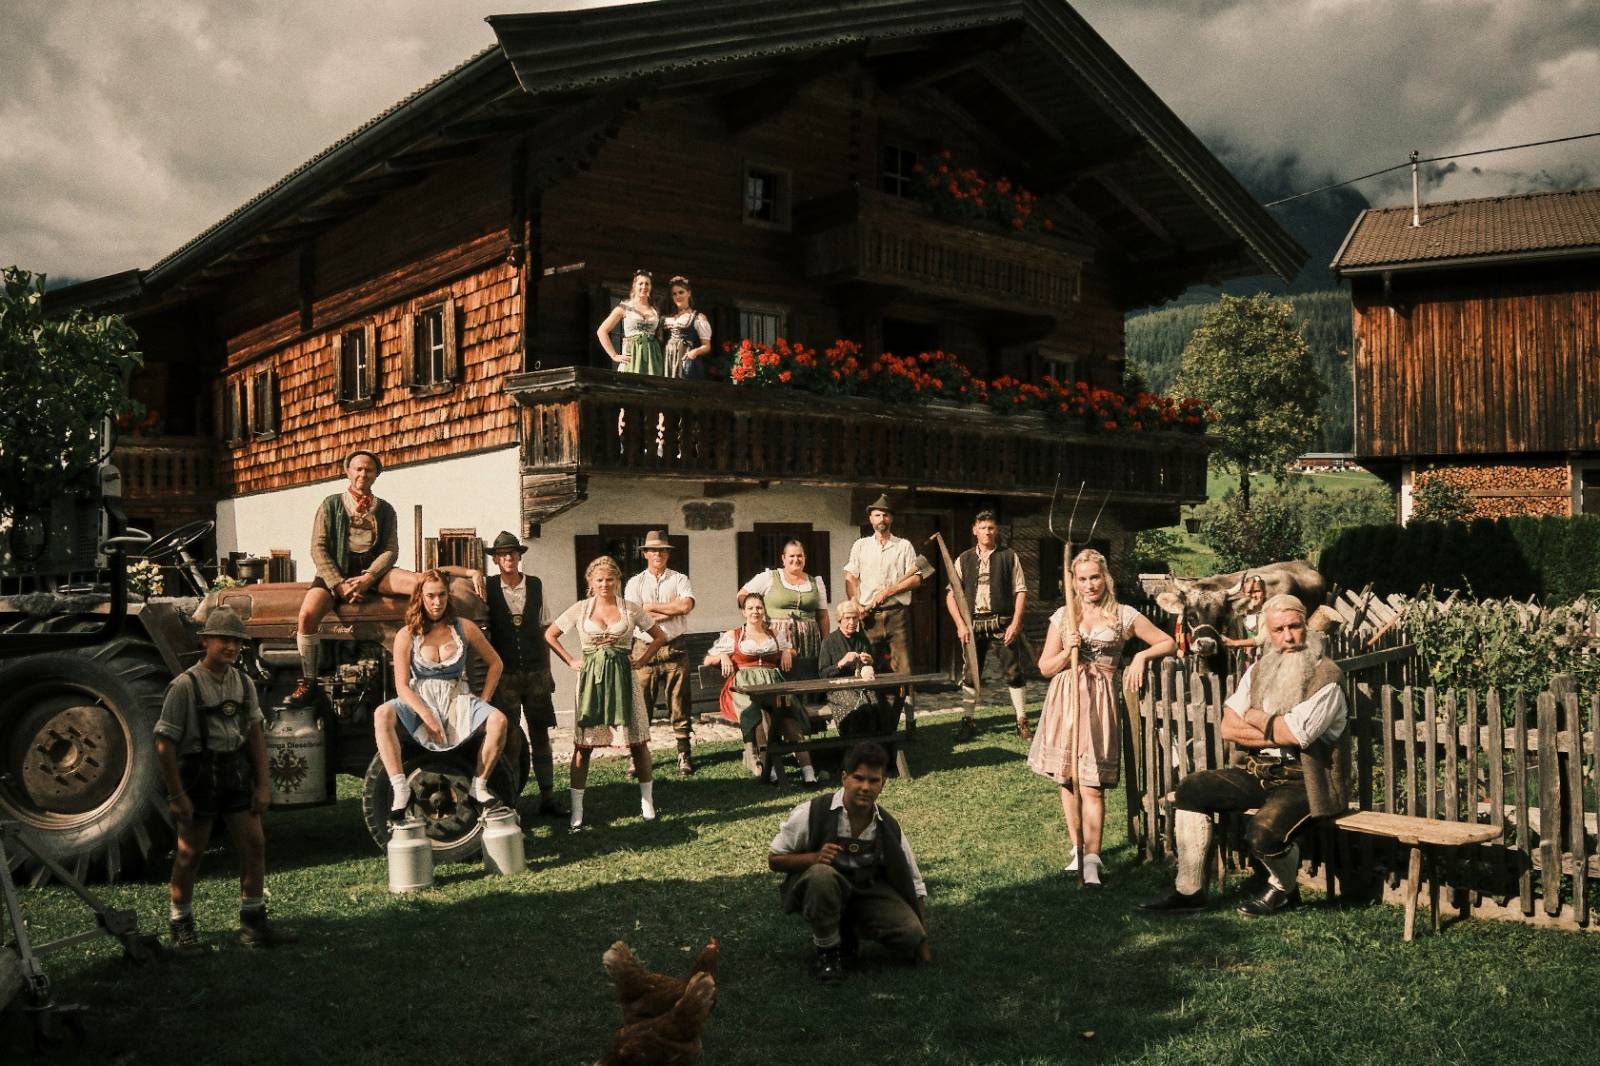 Rammstein zpívají o obrovských přednostech dam, videoklip zobrazuje typický venkov